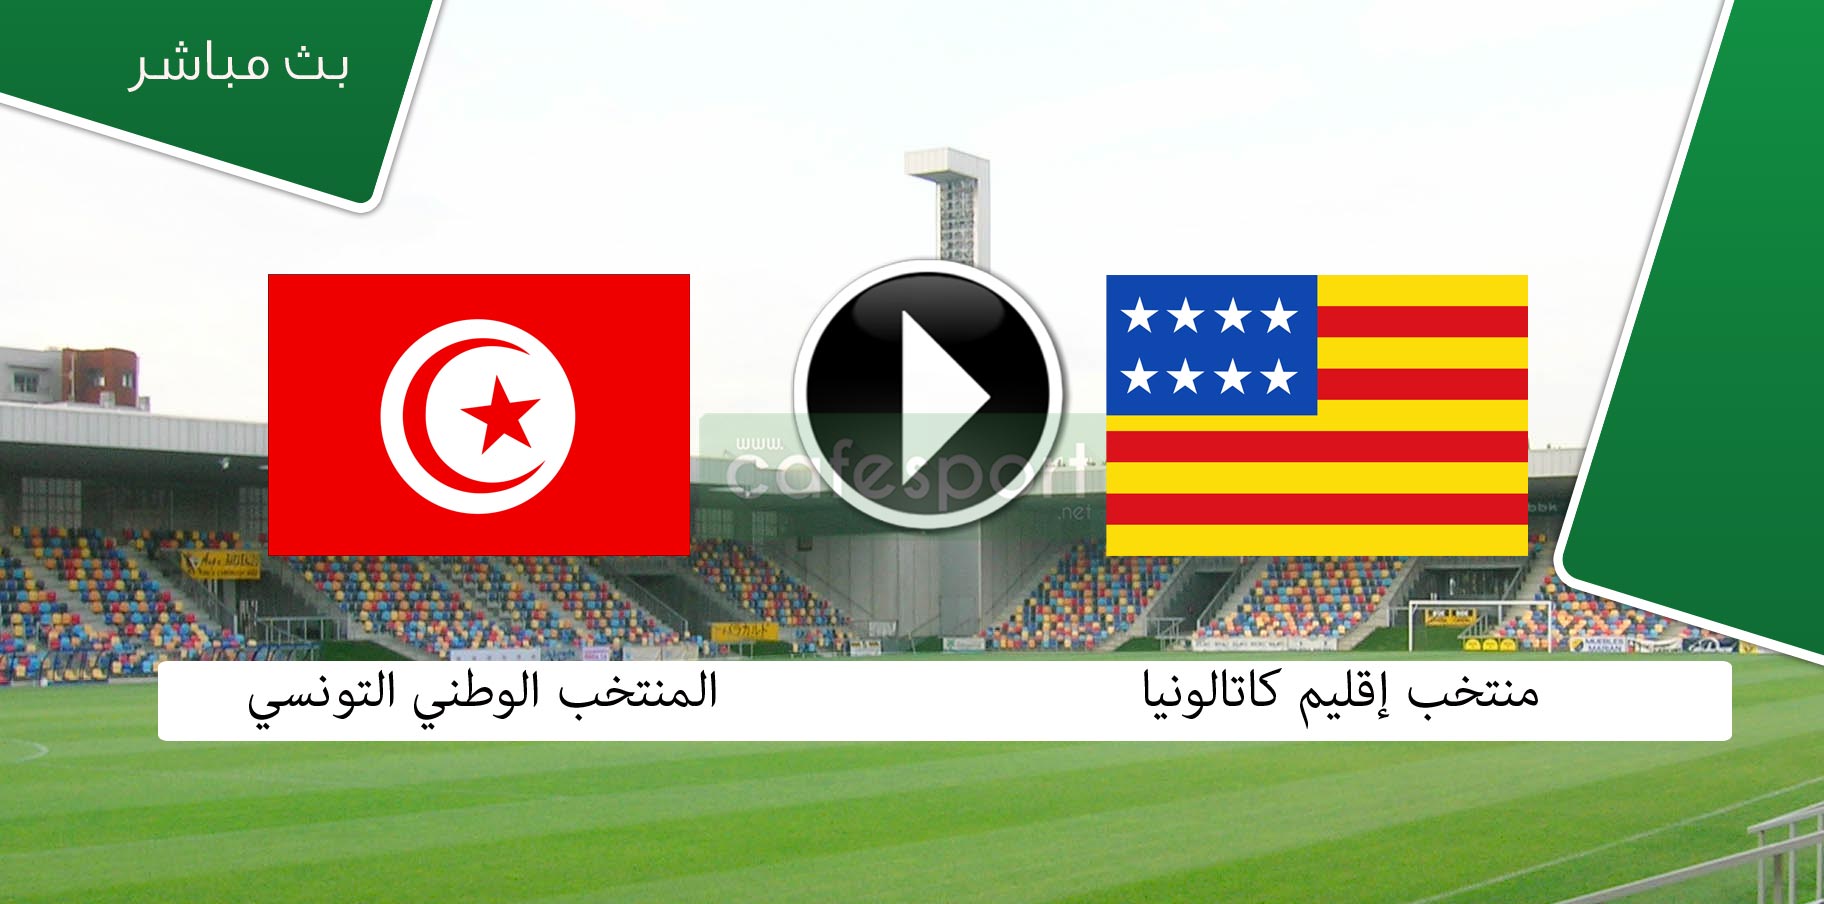 بث مباشر لمباراة كتالونيا - تونس